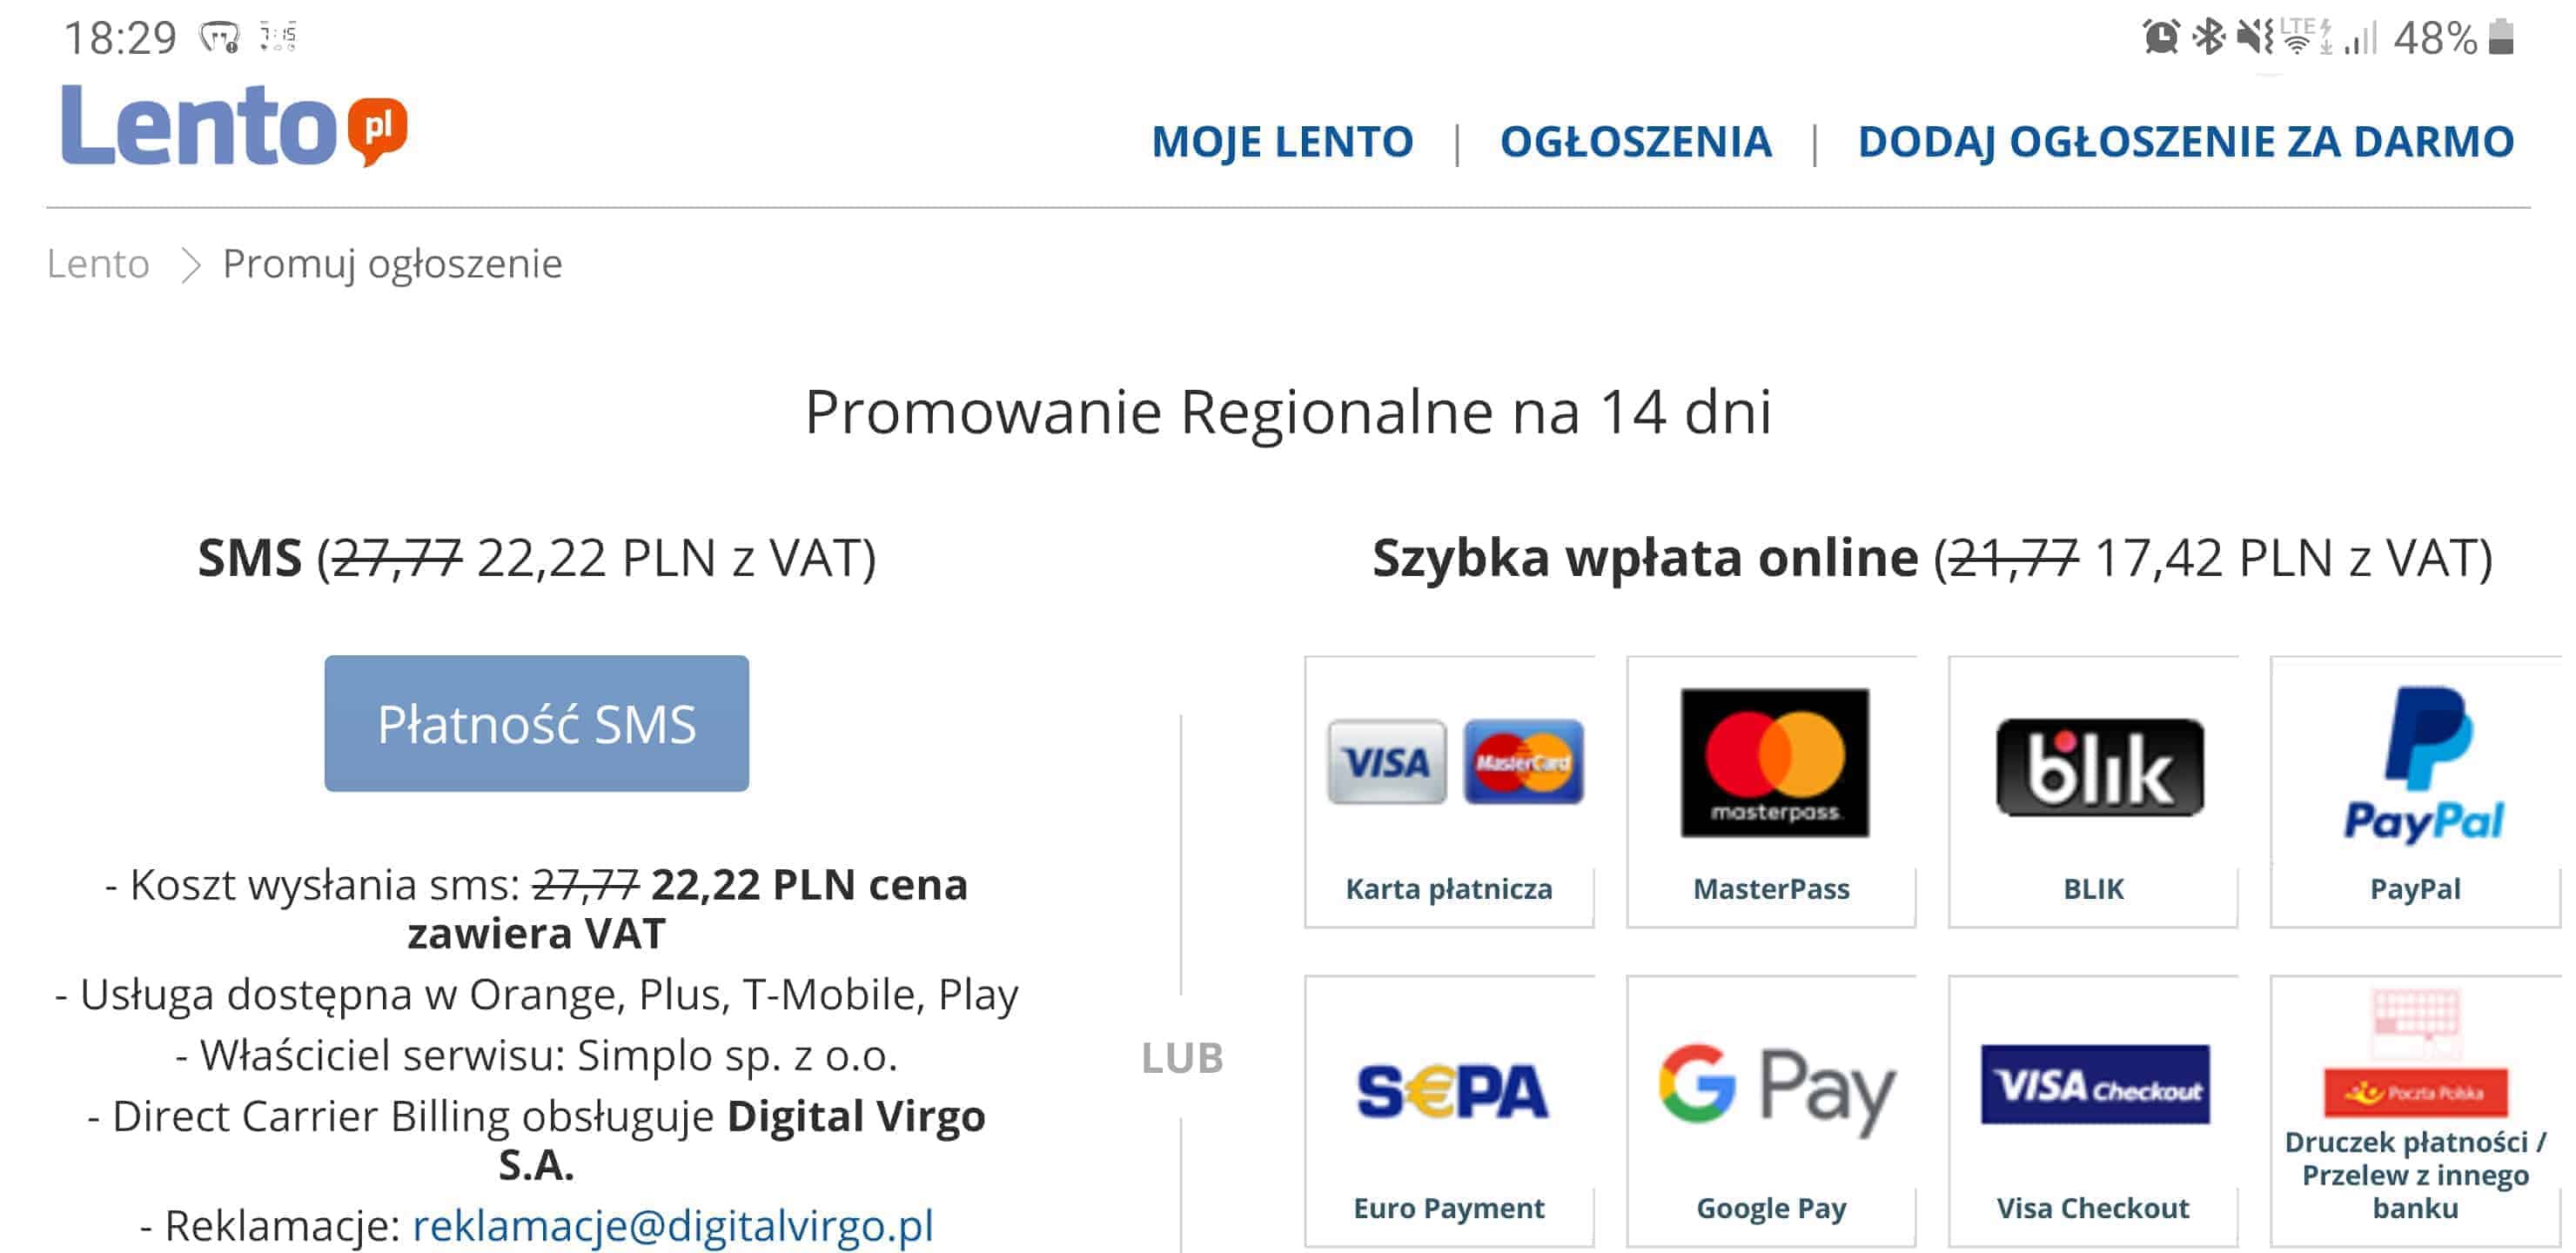 Kod promocyjny zniżka- darmowe ogłoszenia lento.pl